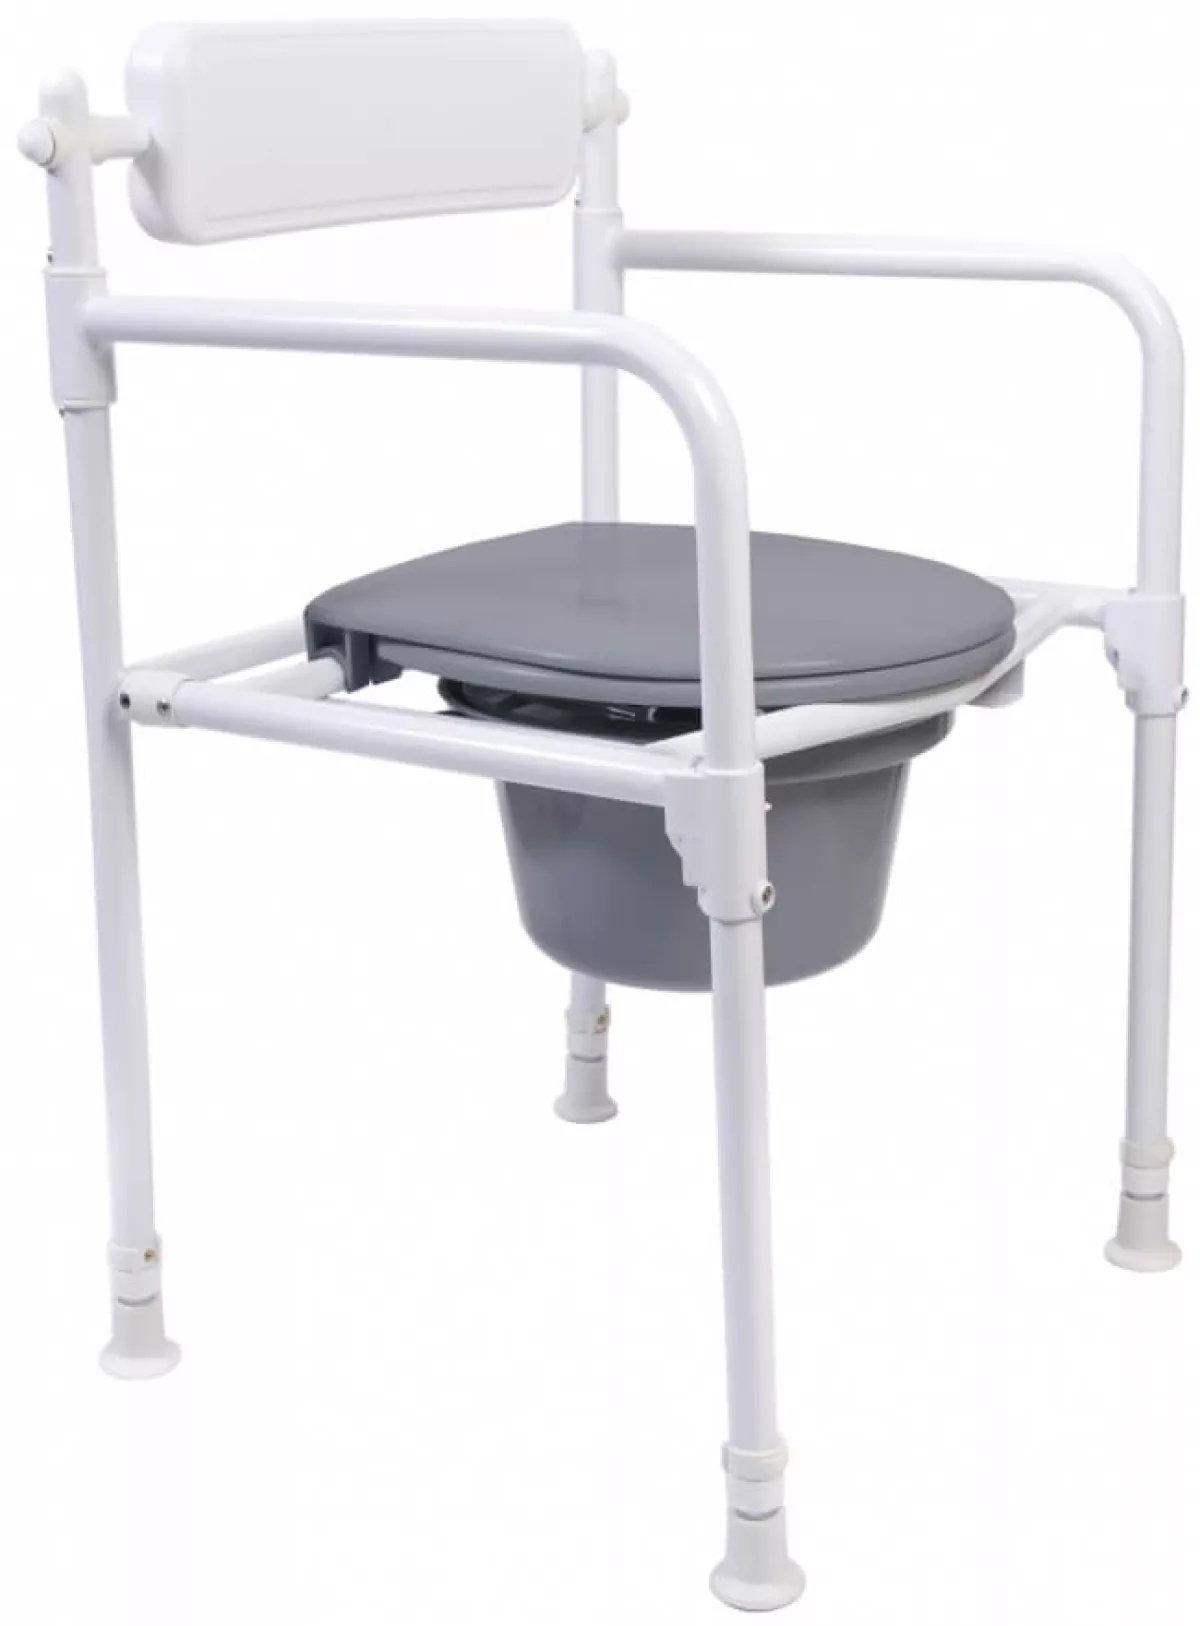 #2 - Foldbar toiletstol med bækken